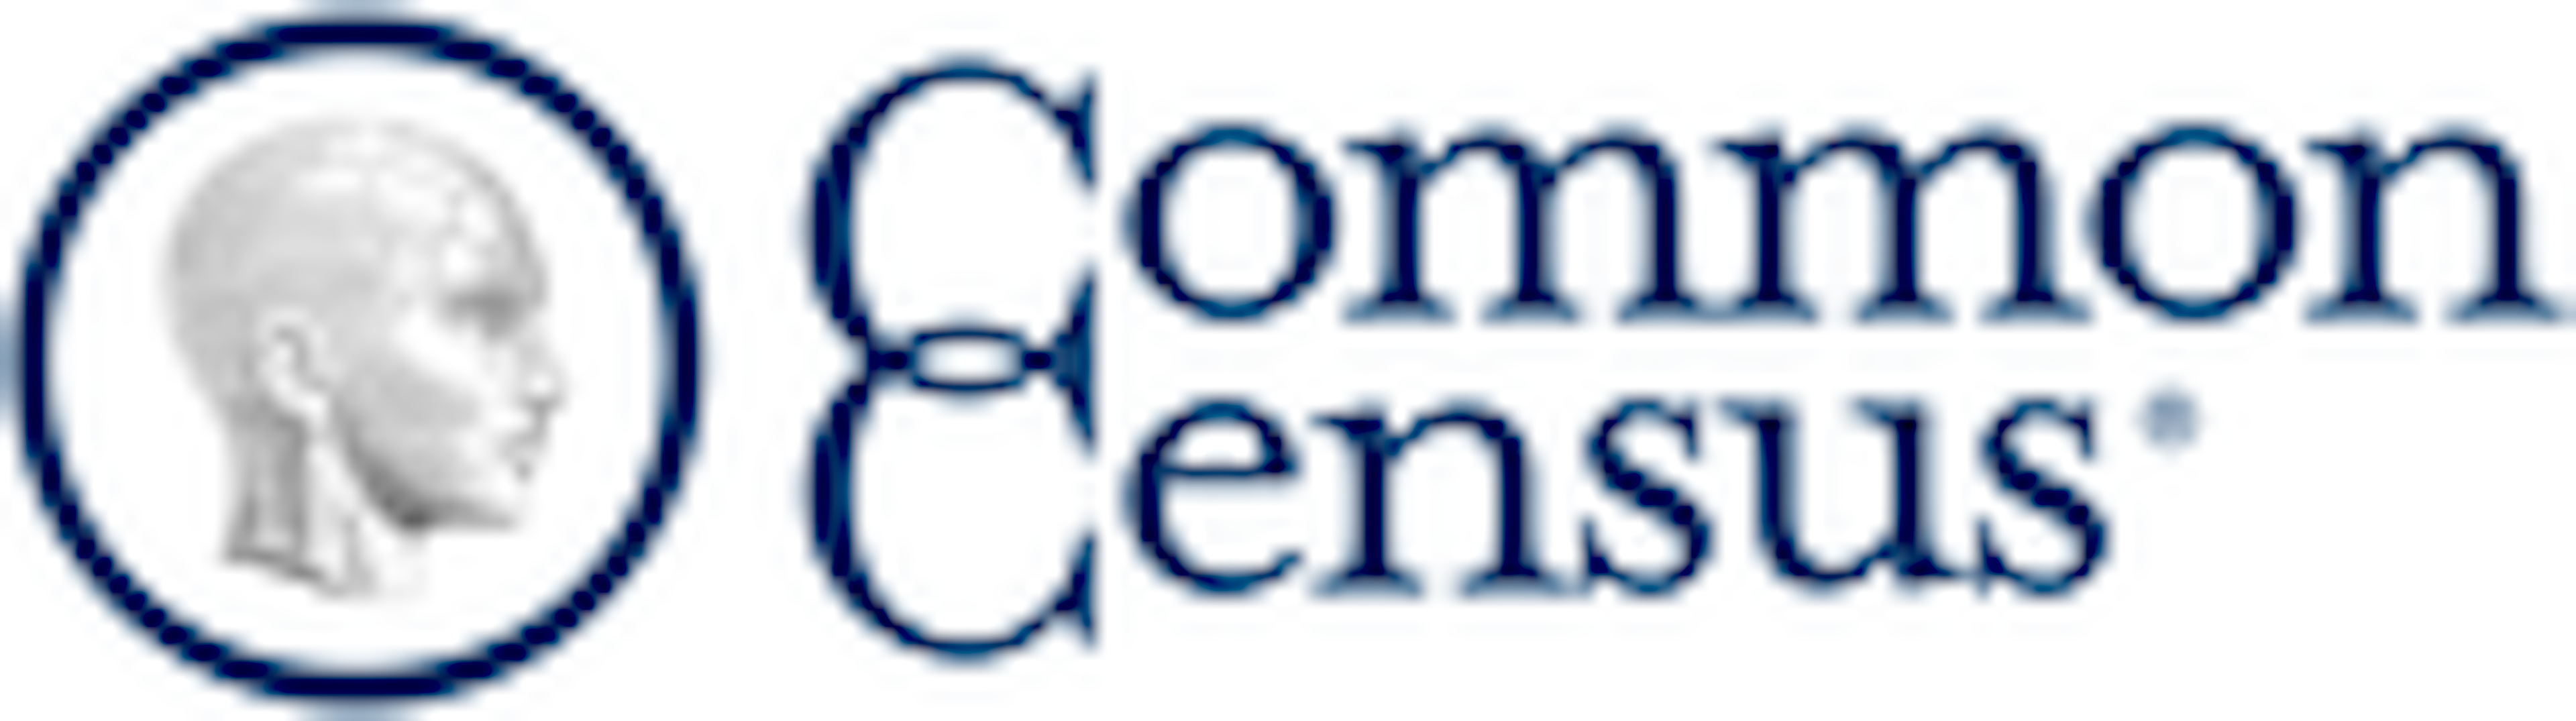 Common Census Logo